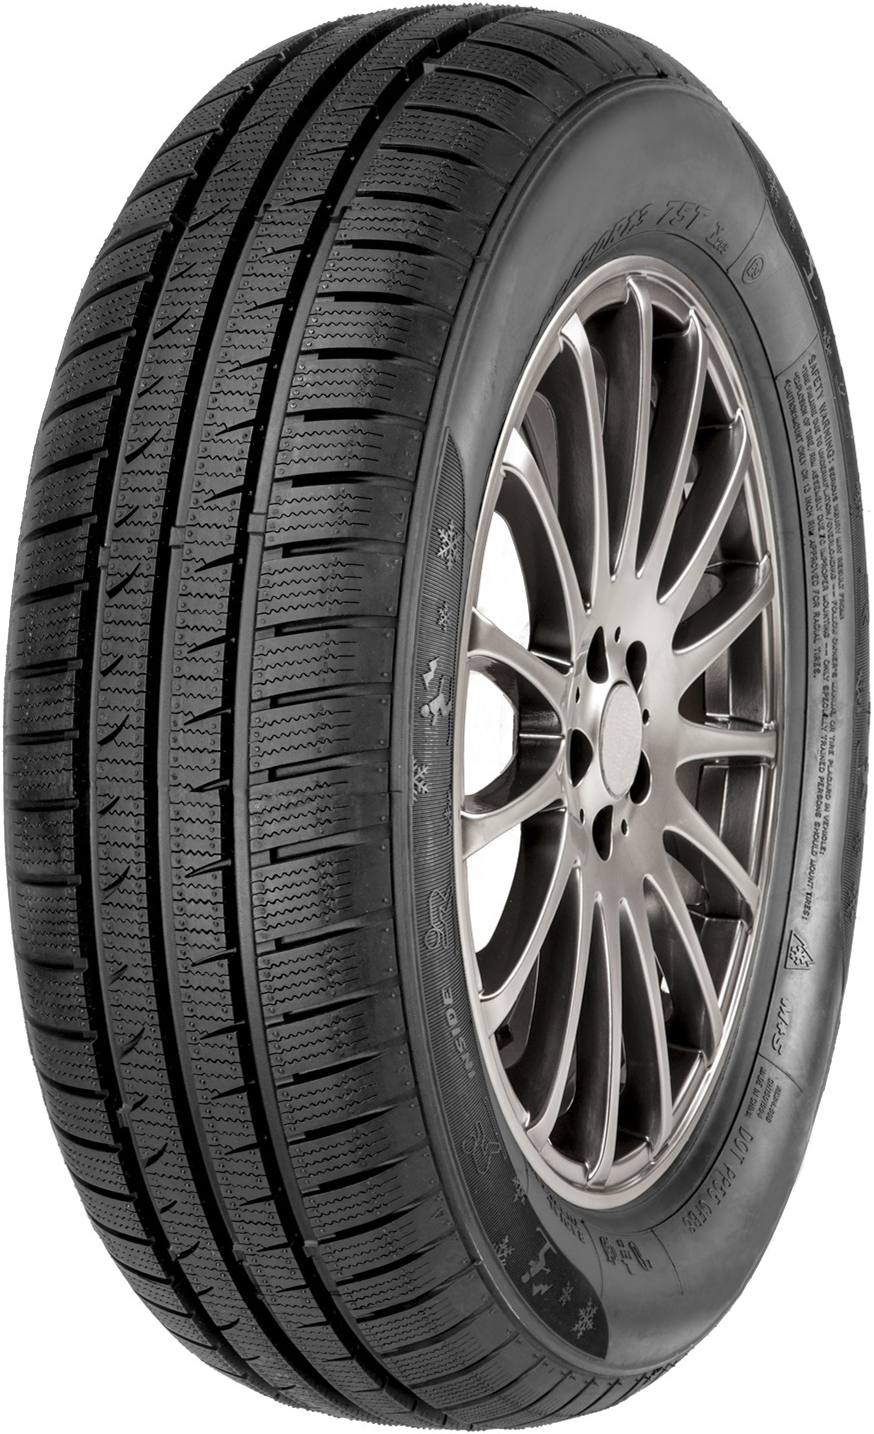 Автомобилни гуми ATLAS POLARBEAR HP 215/65 R16 98H